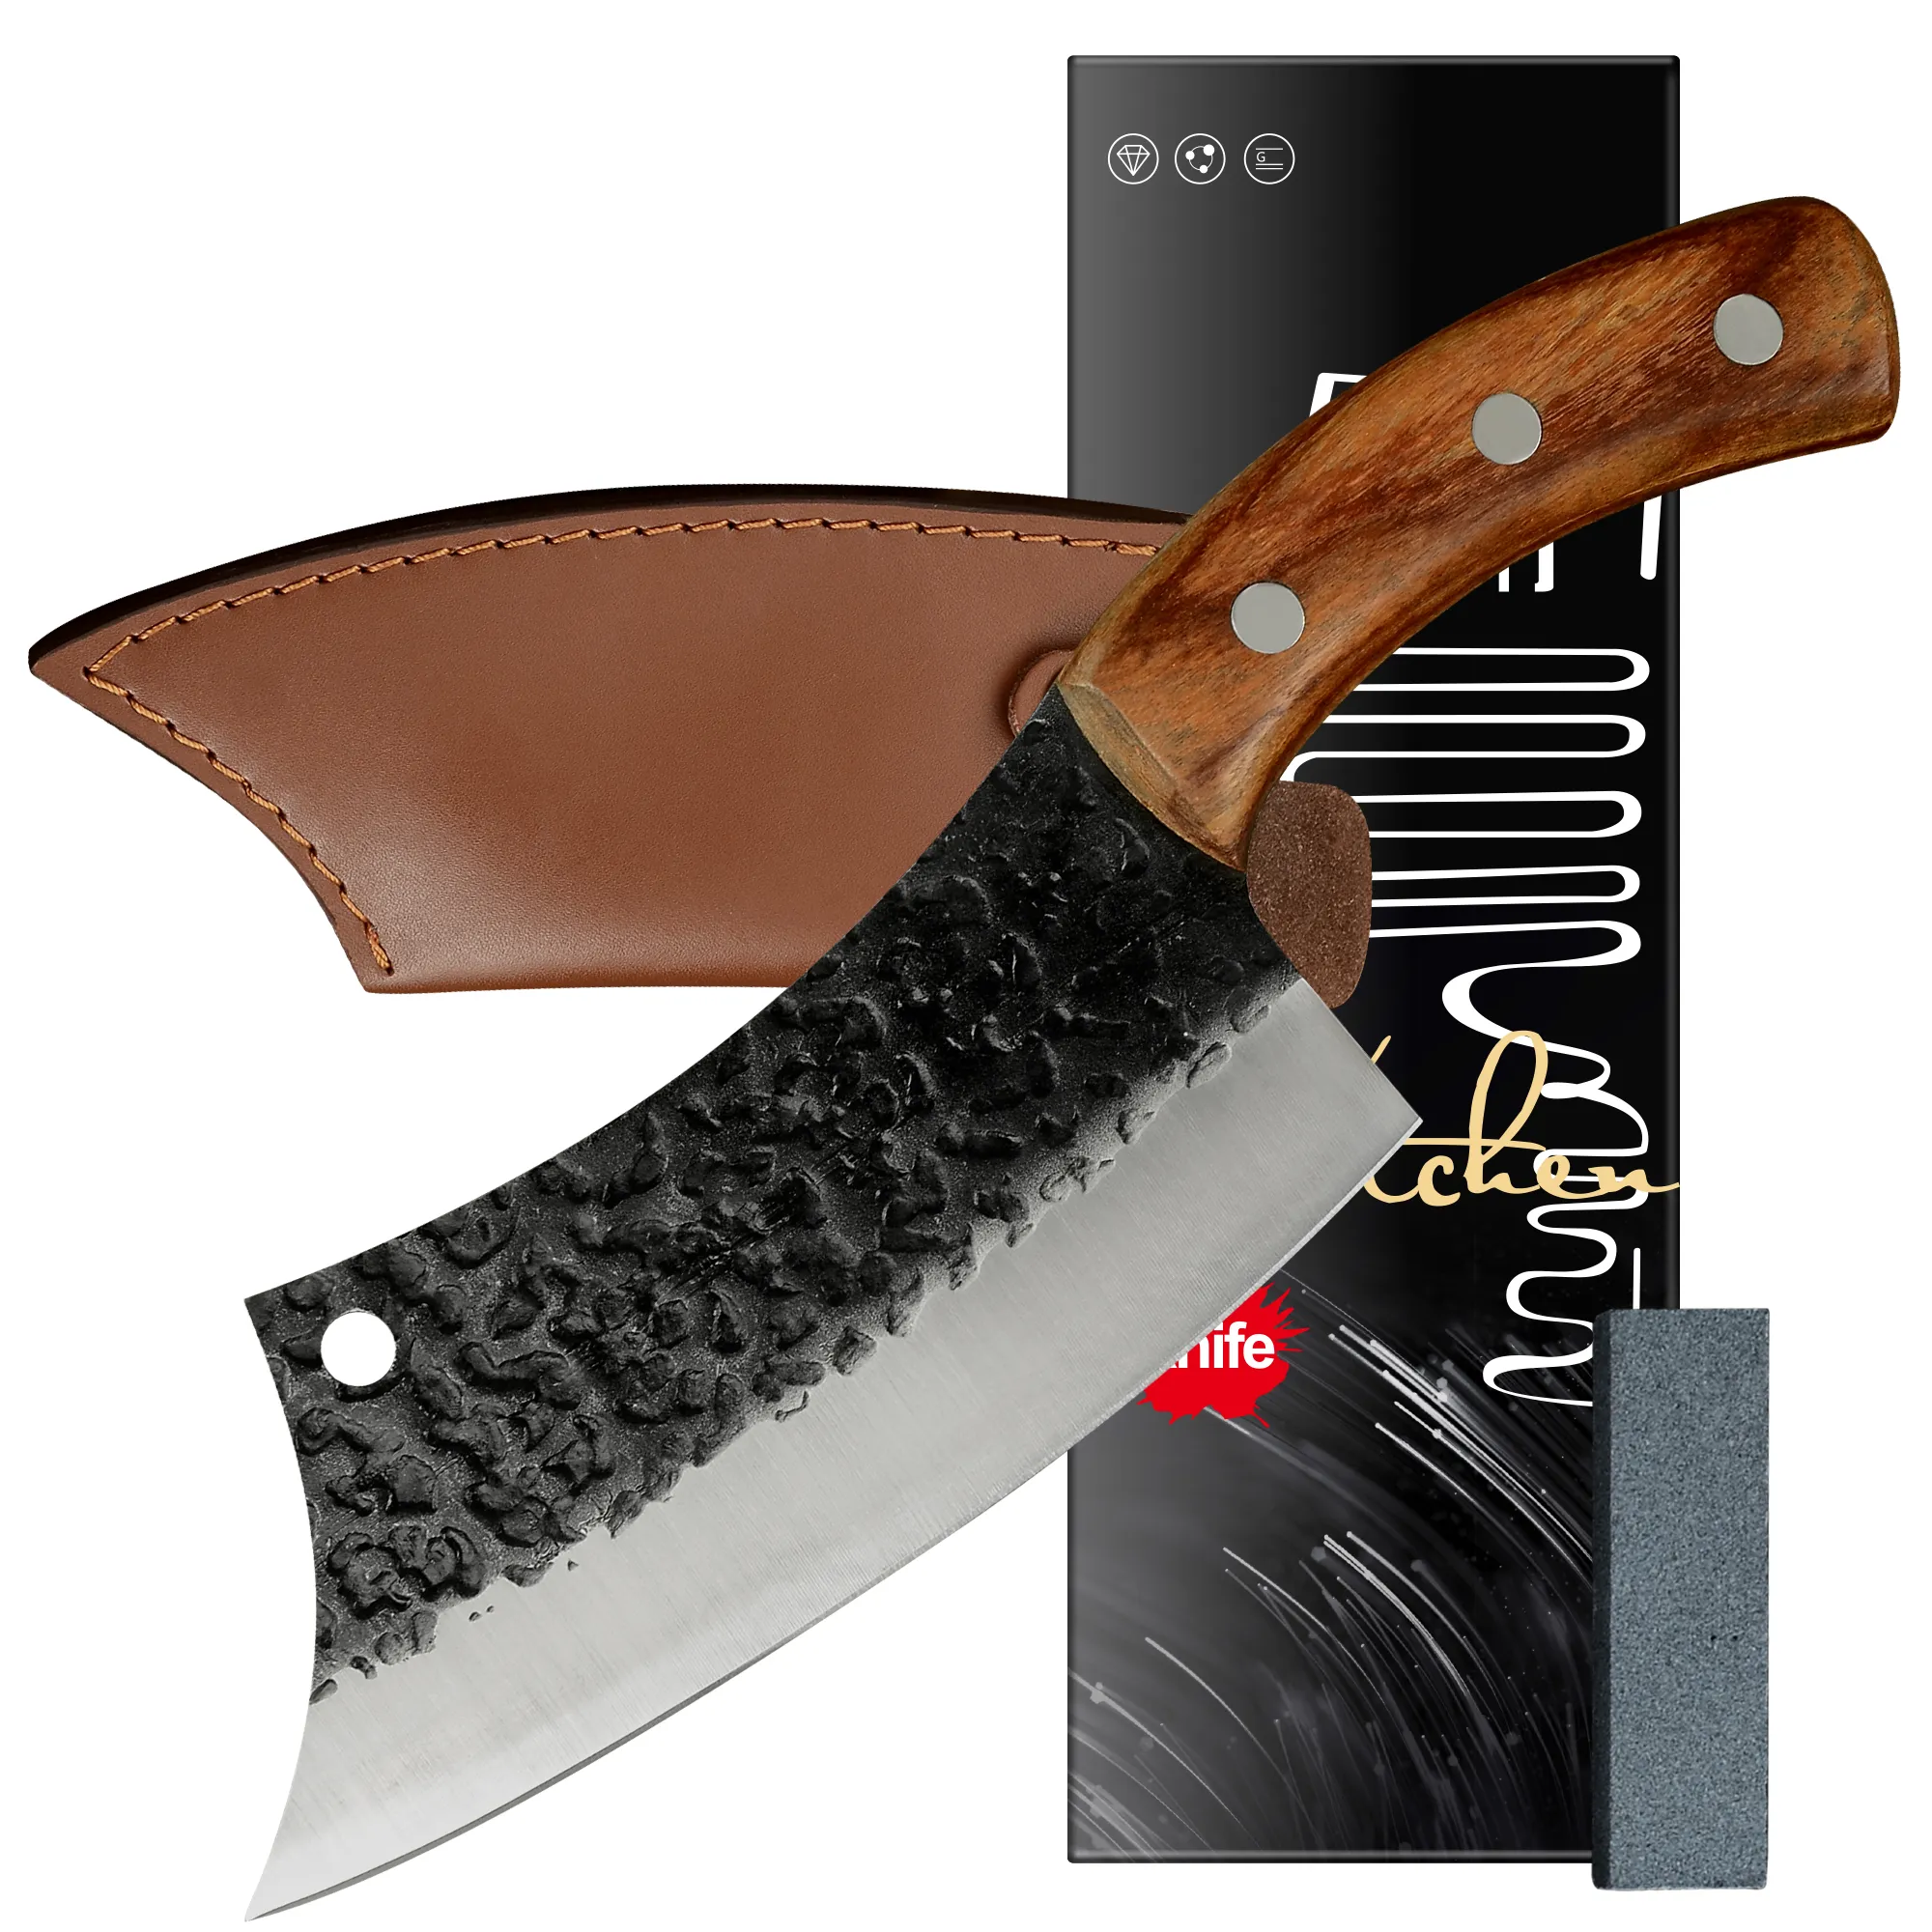 XYJ Full Tang Tactical Кухонный нож 6,2 дюйма Cleaver с ножным ножным нож для ножей 4CR13 нарезка ножей мясника для мясного овощного приготовления